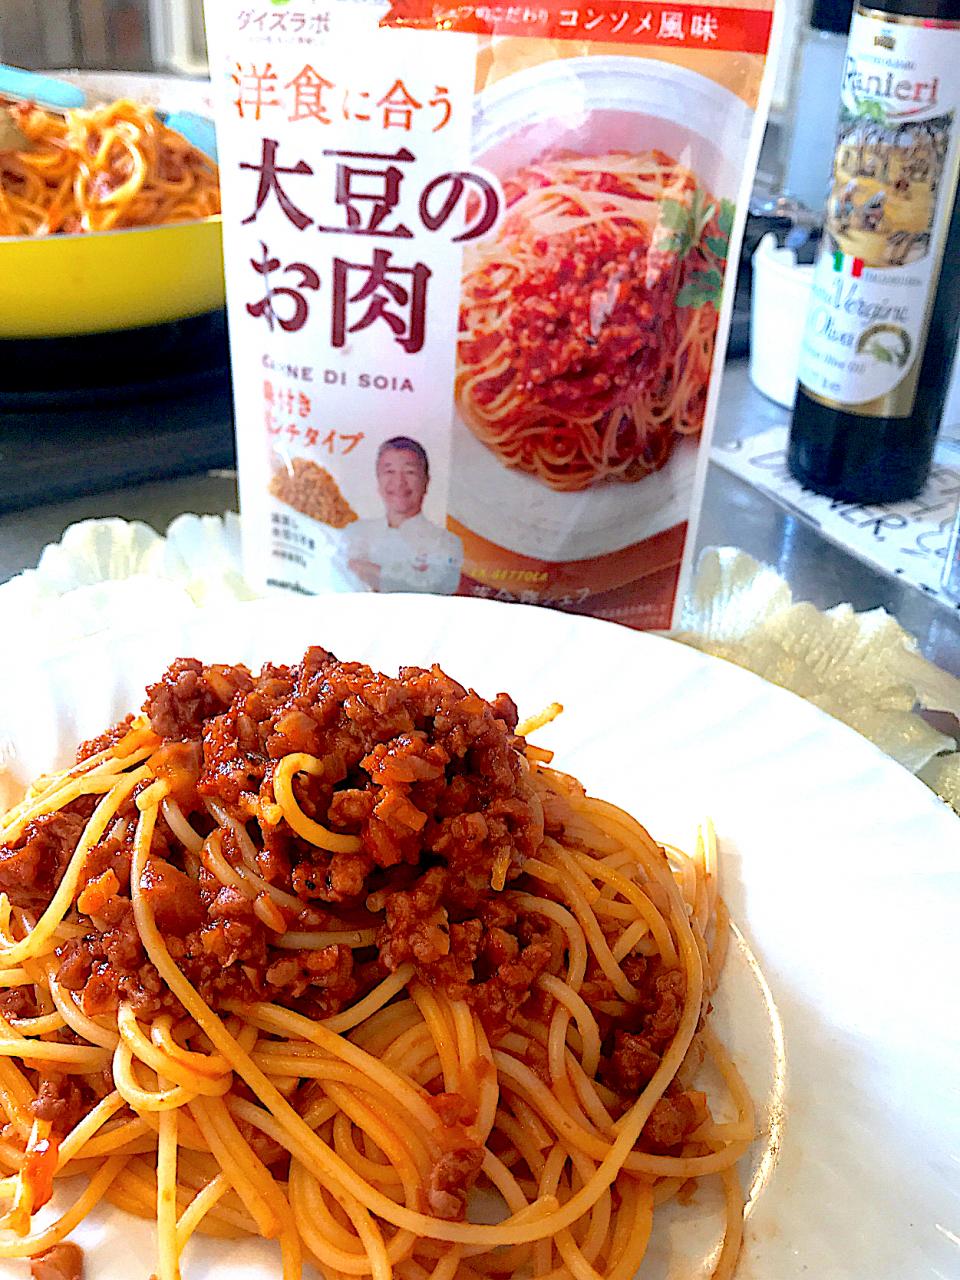 マルコメさん主催｢大豆のお肉｣新商品発表会、落合シェフと成田シェフによる『オンライン料理教室』